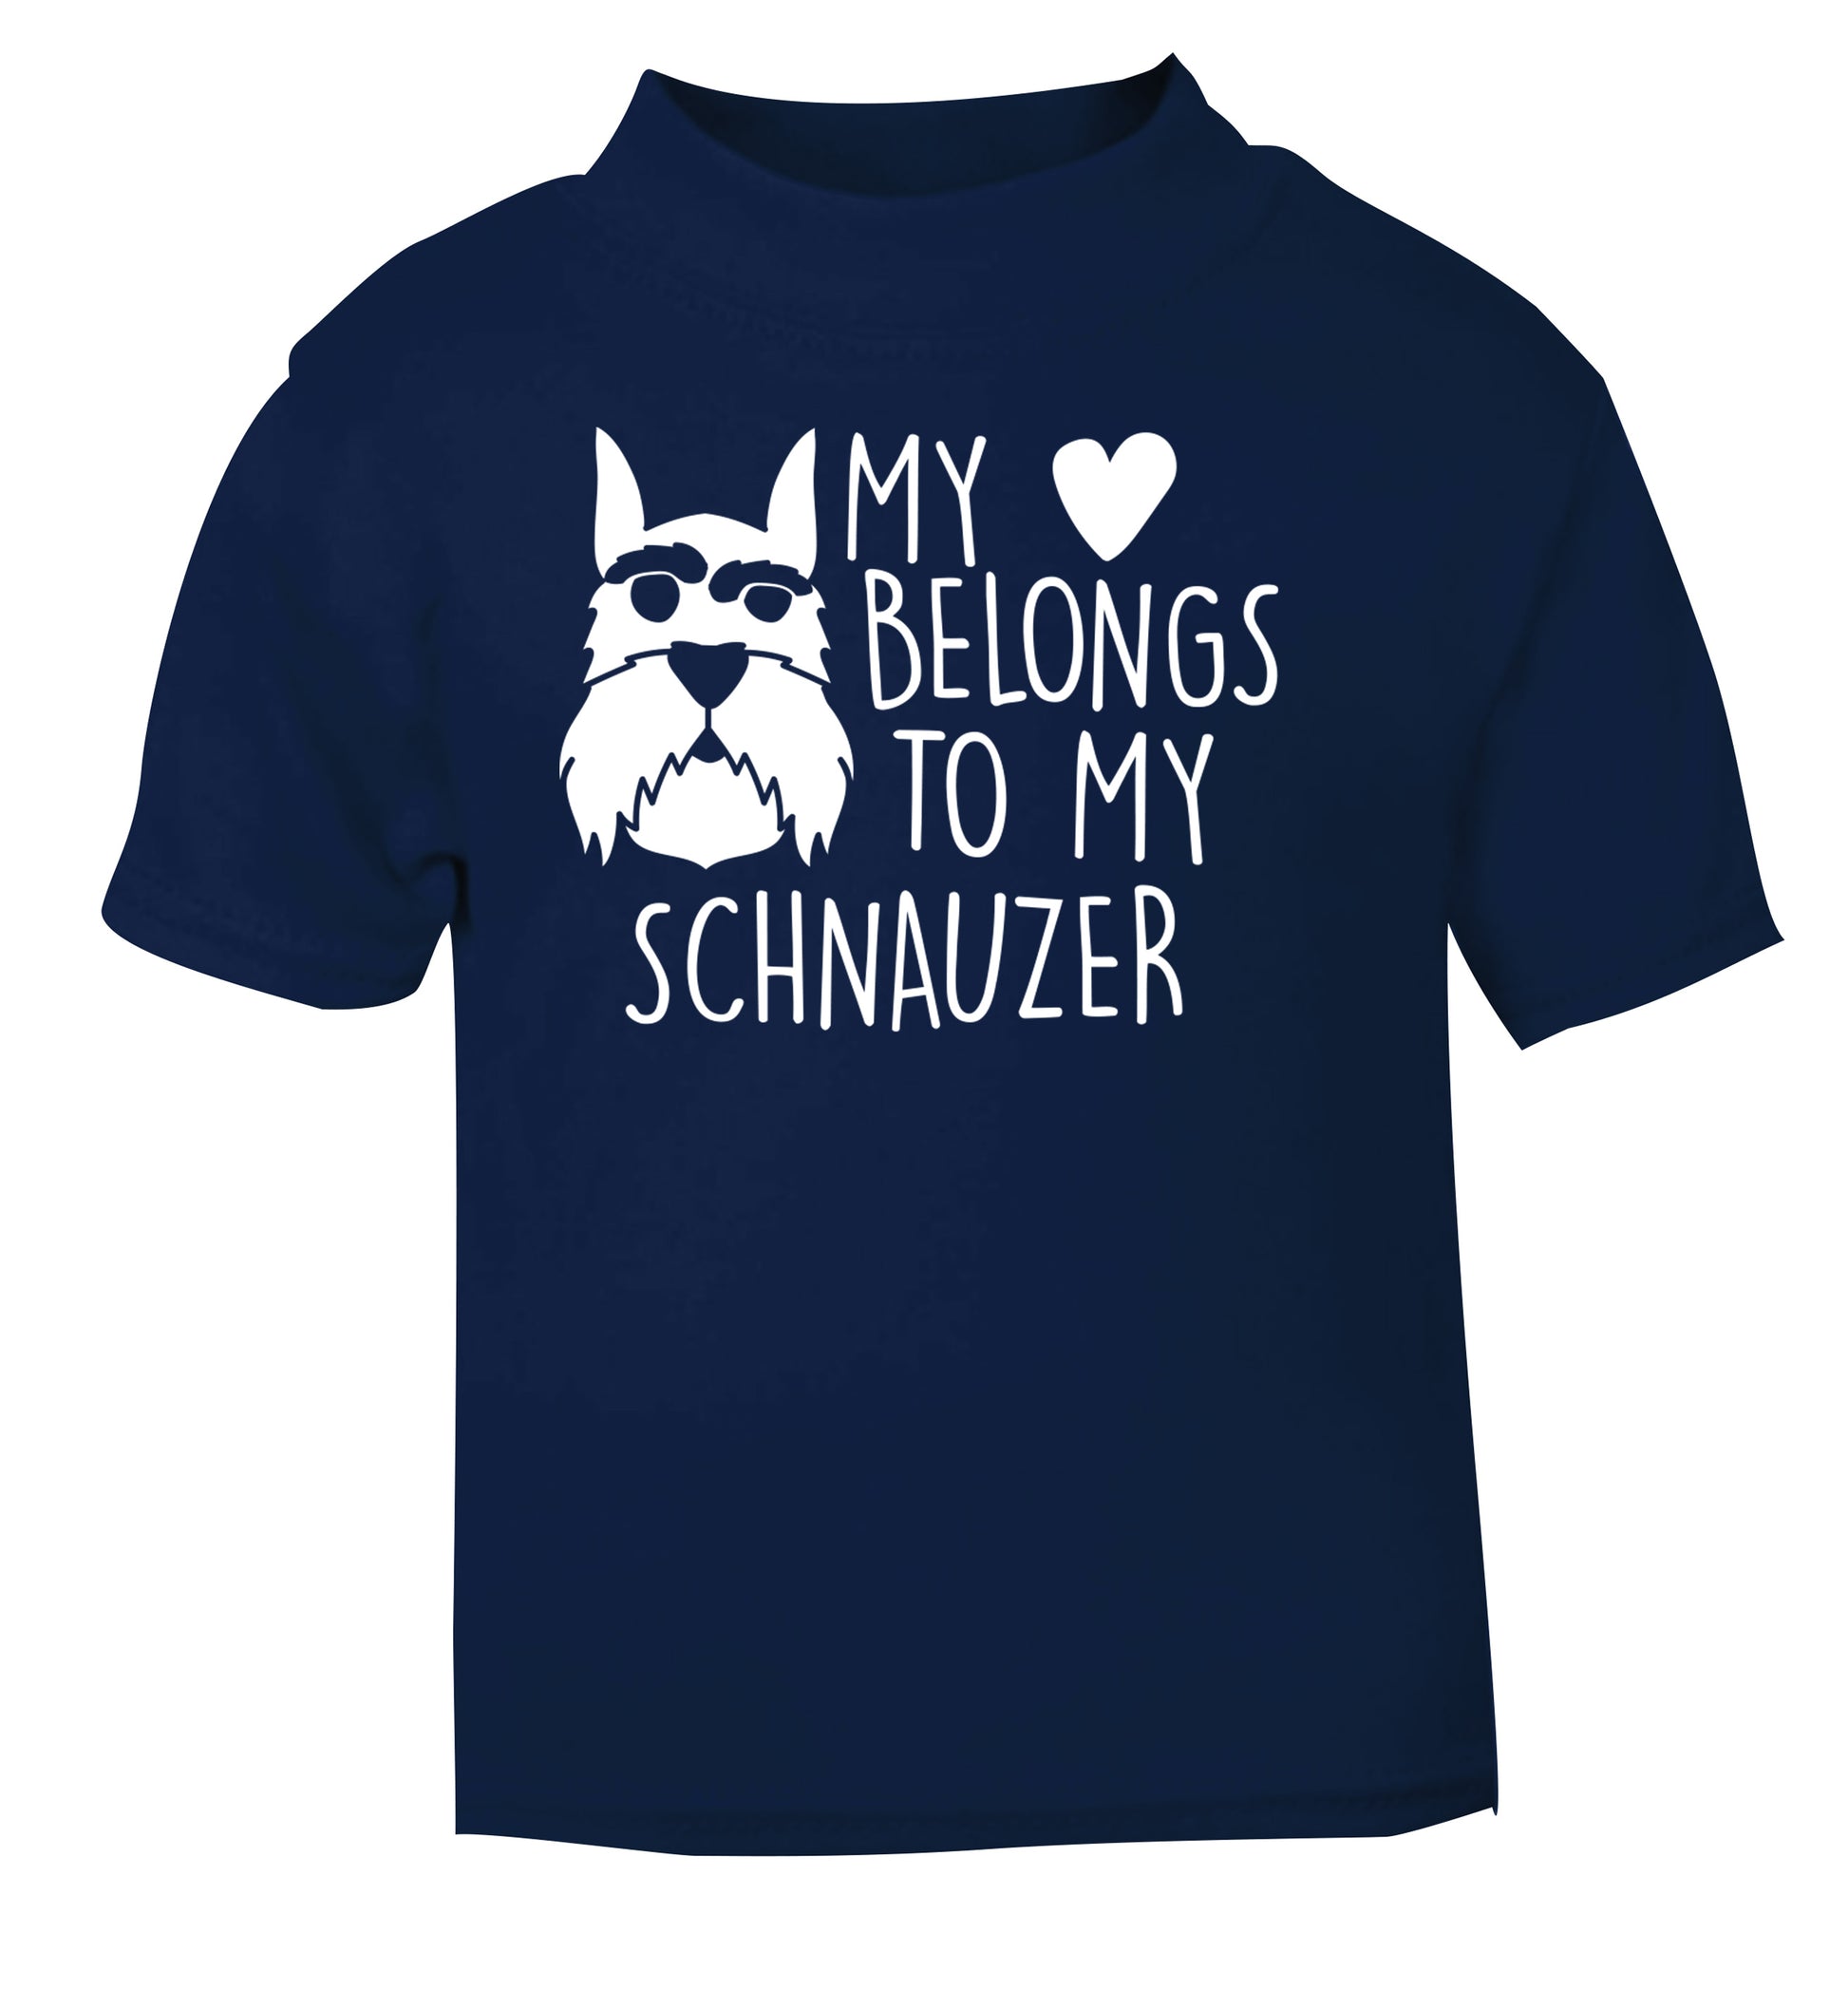 My heart belongs to my schnauzer navy Baby Toddler Tshirt 2 Years